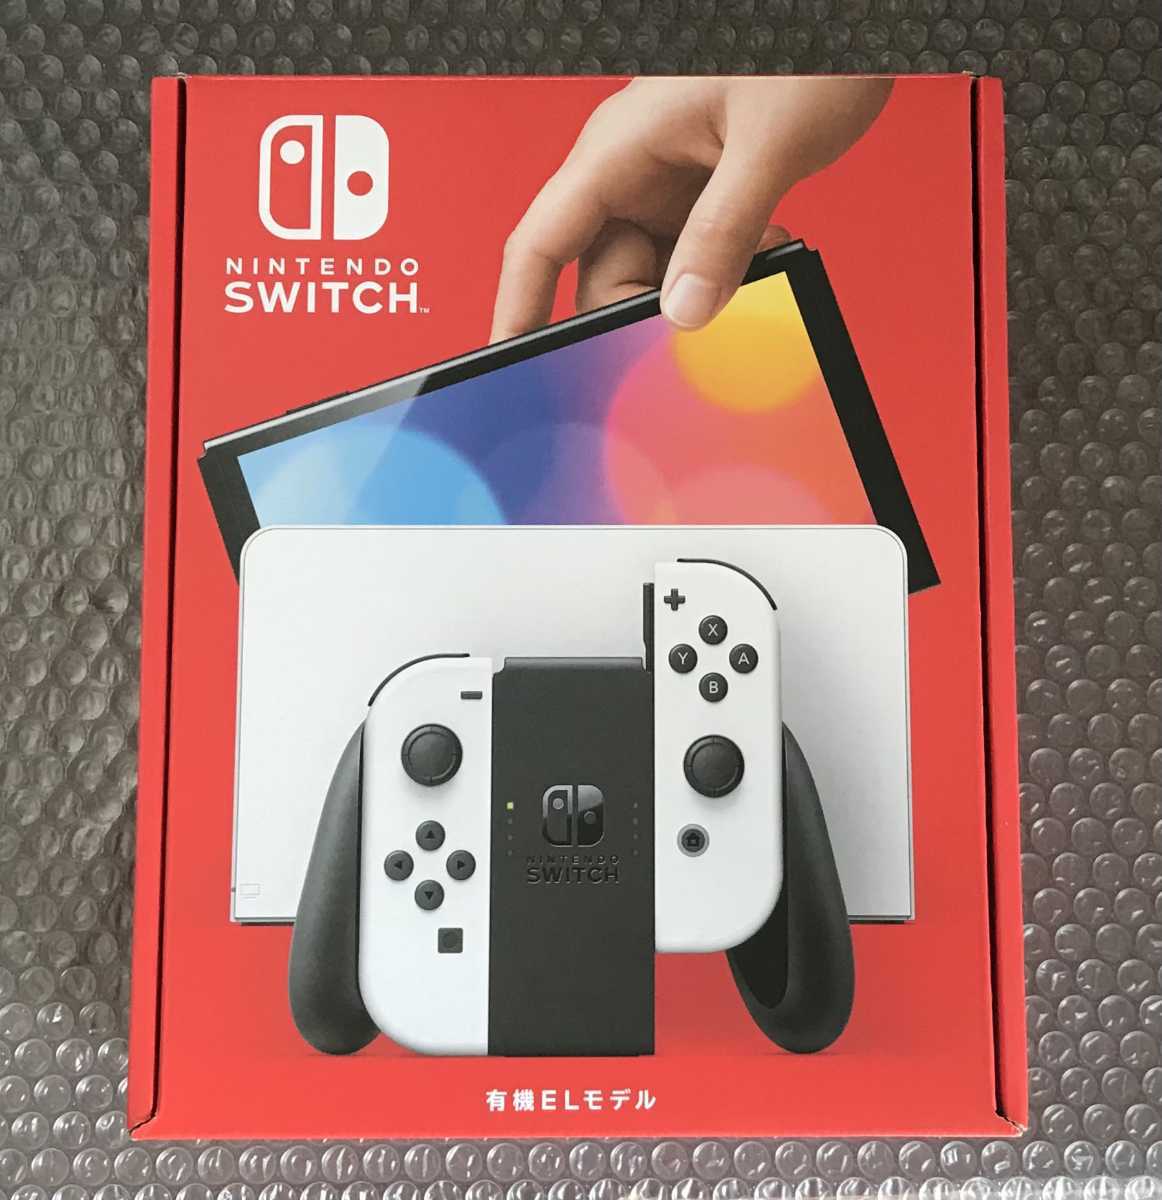 国内外の人気 店舗印なし【新品保証付き】Nintendo Switch 有機EL 